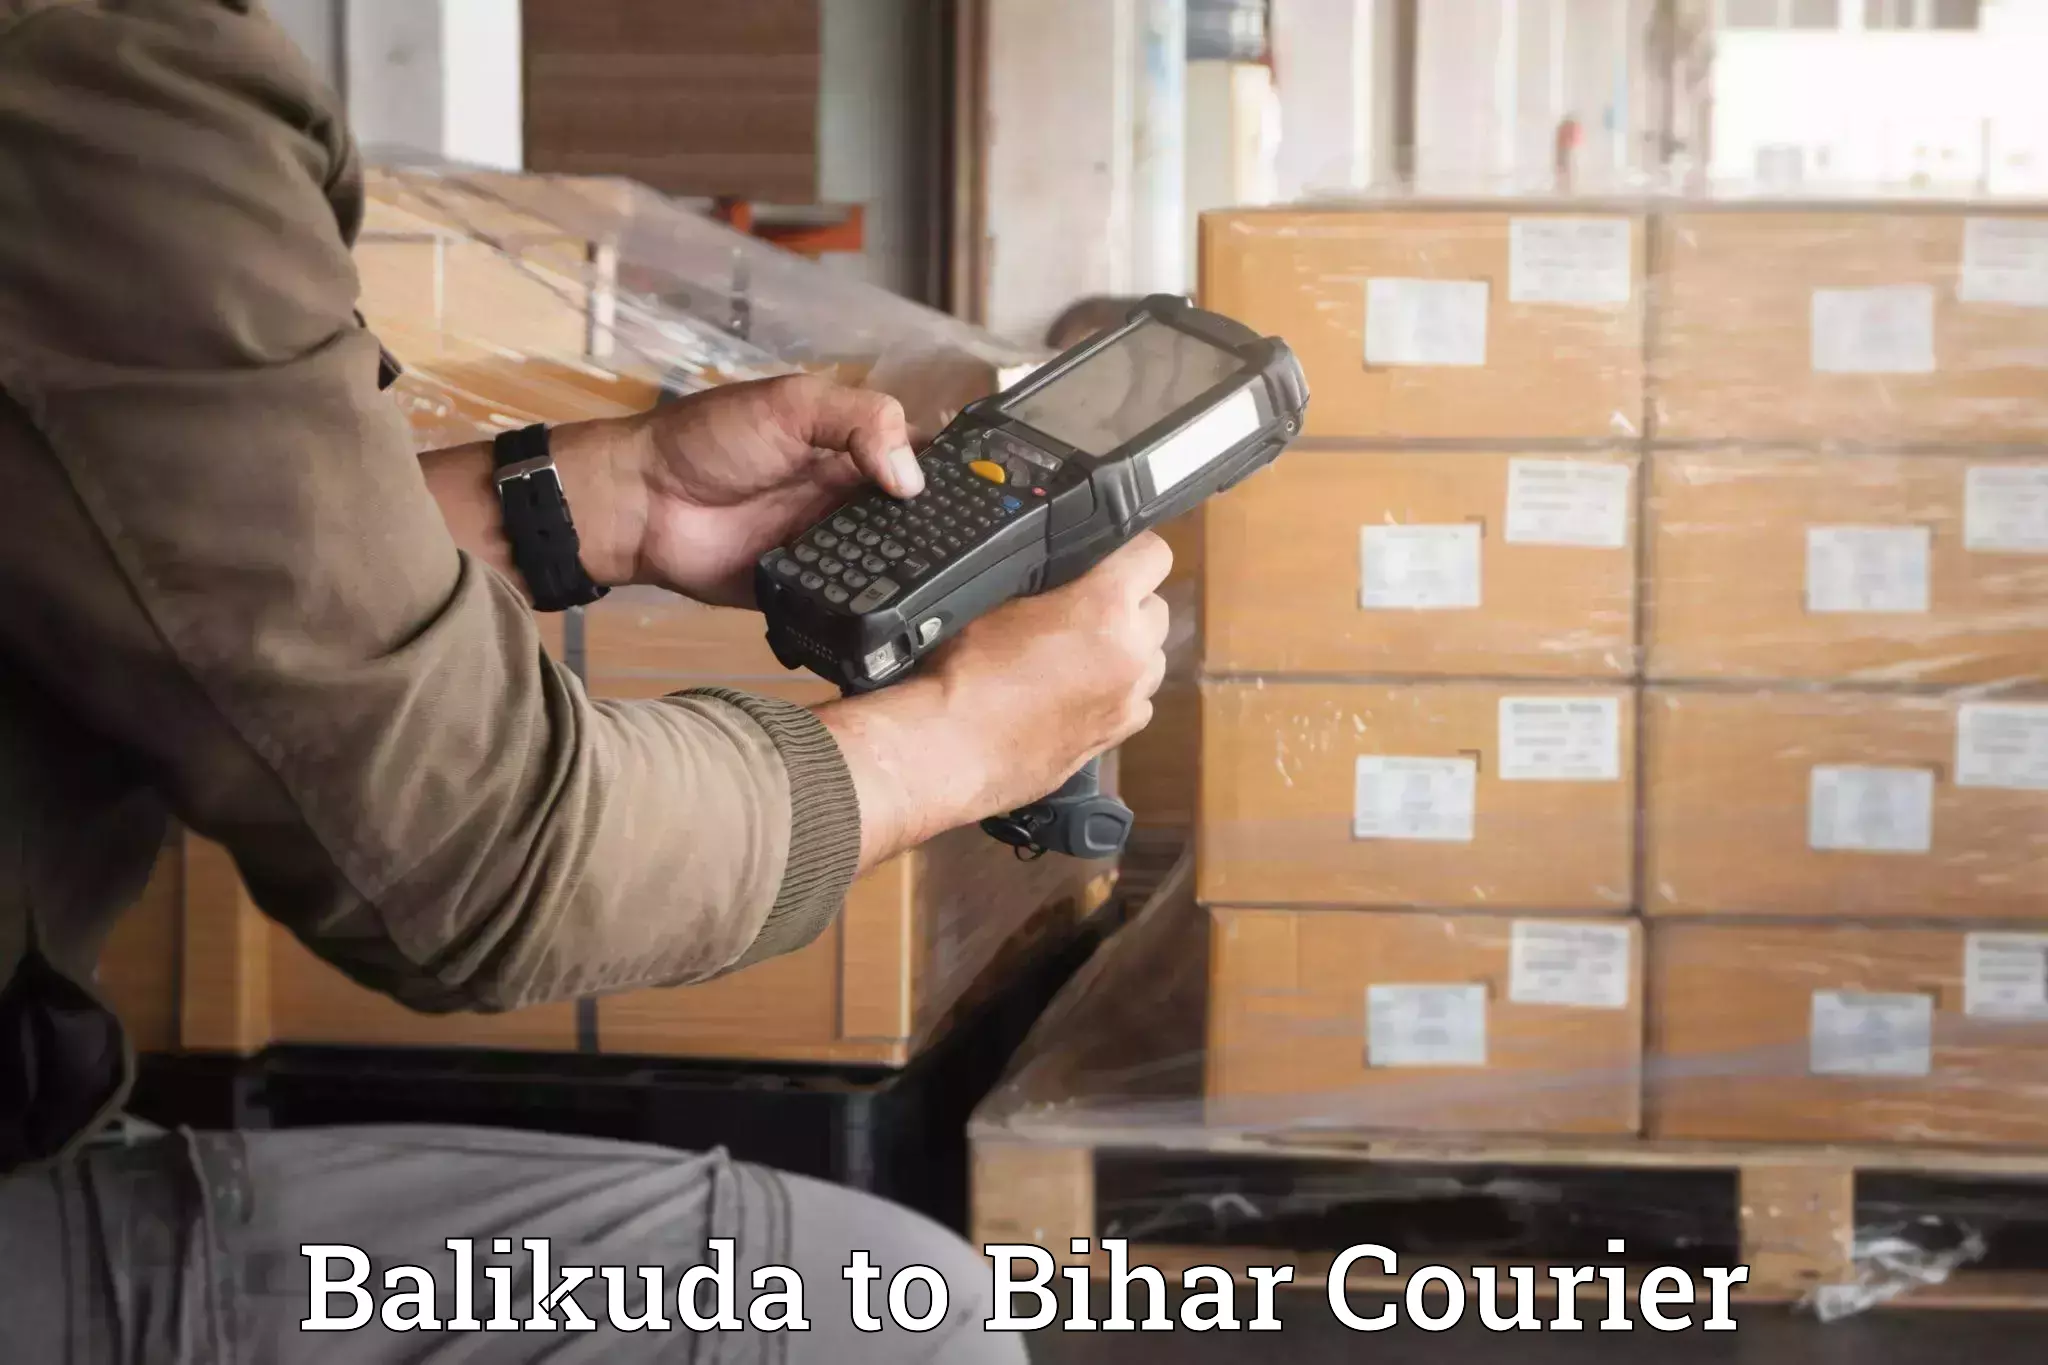 Professional movers Balikuda to Barhiya